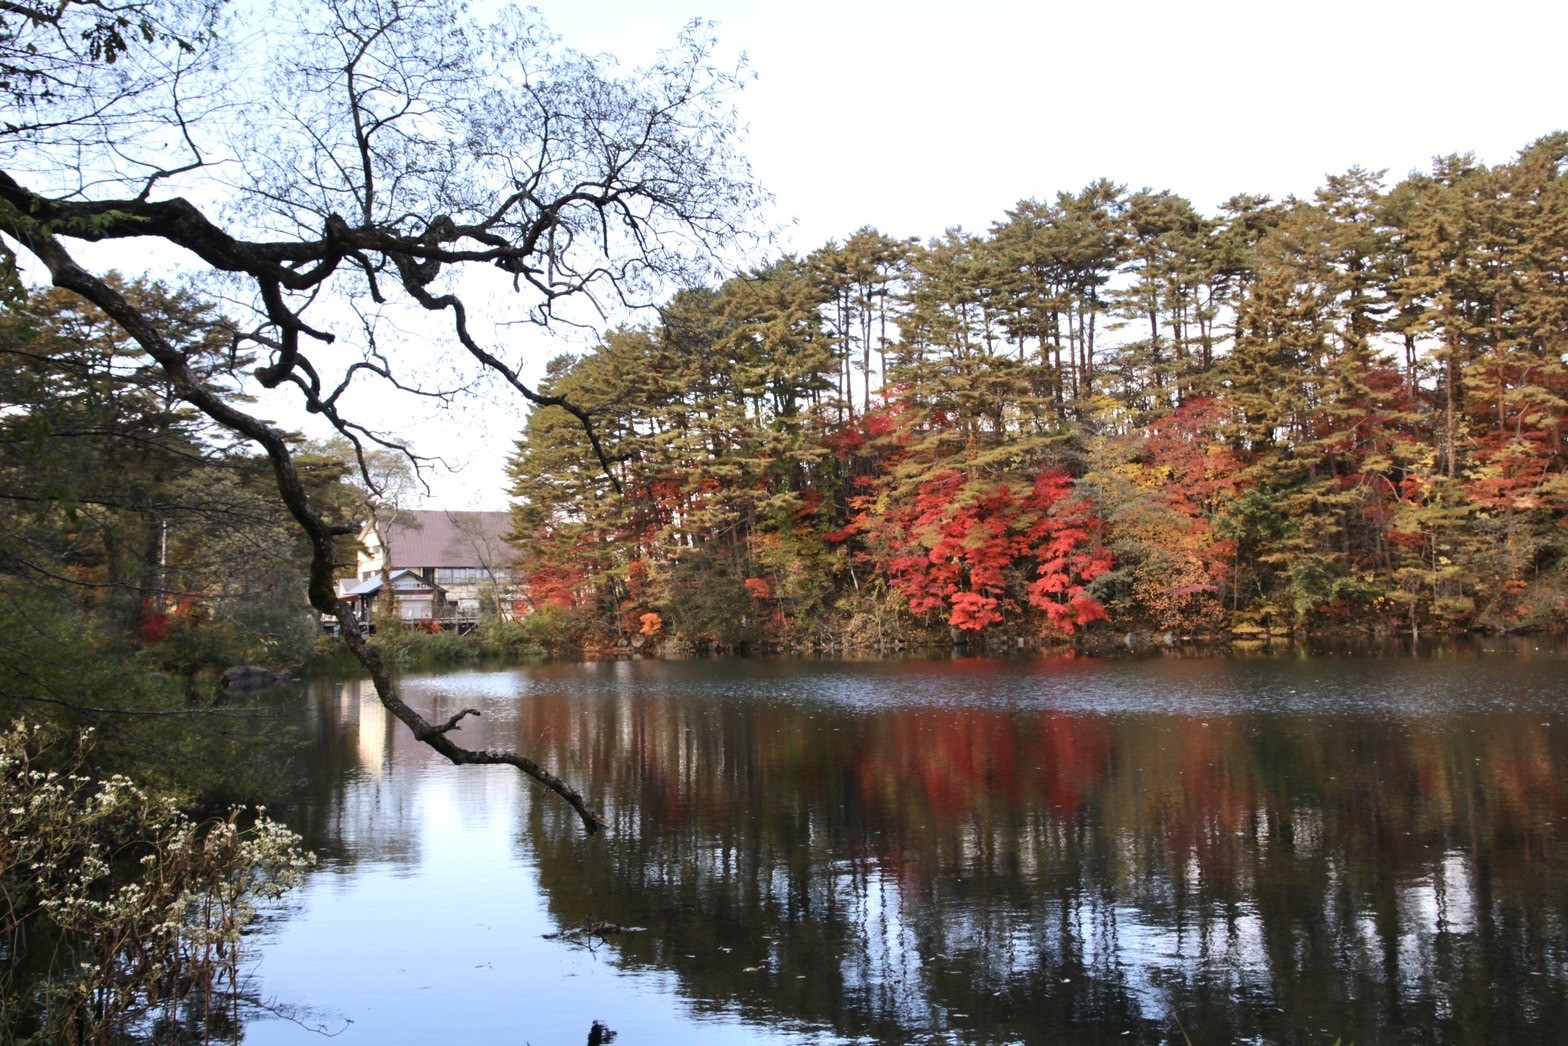 「柳沼」周邊種植許多楓樹，在秋天進入楓紅期間時特別絢麗顯眼。